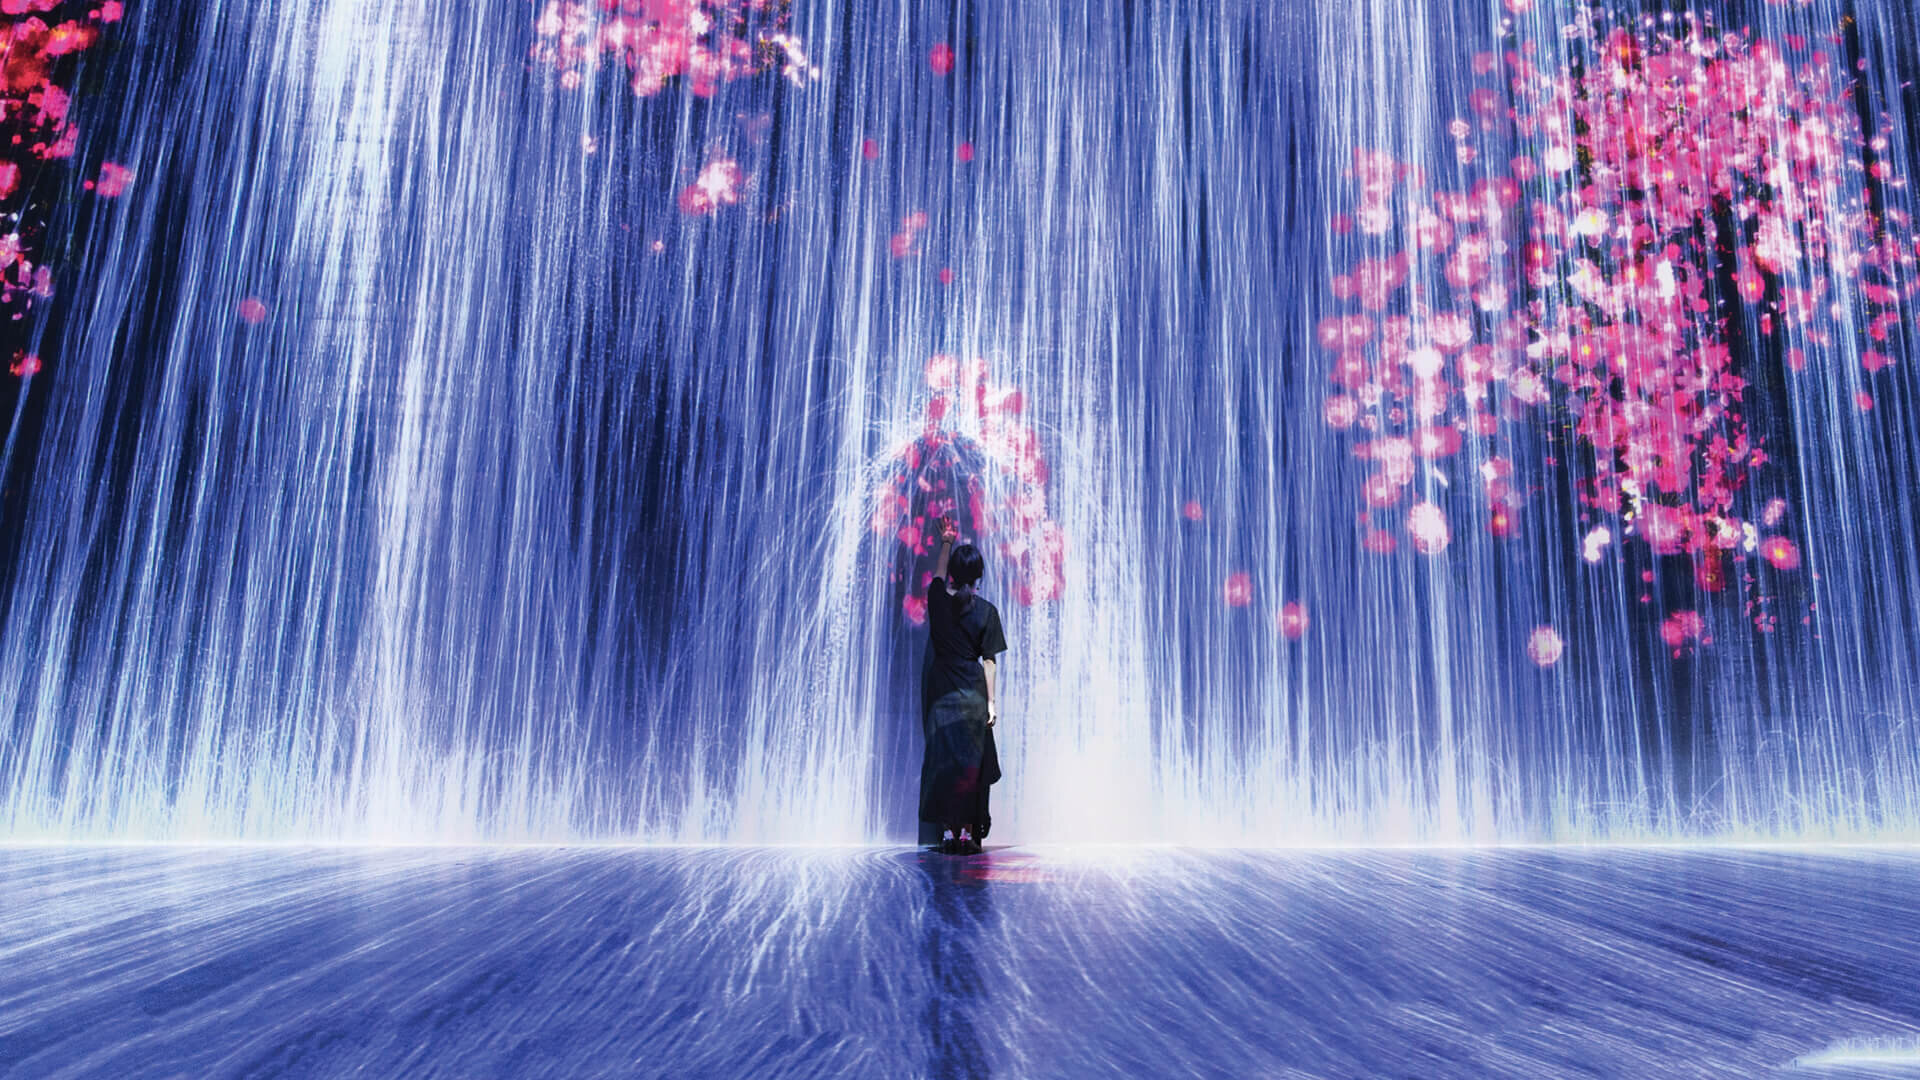 图片展示一人站在光影交错的艺术装置中，四周是流动的蓝色光带和飘落的粉红色花瓣，营造出梦幻般的视觉效果。